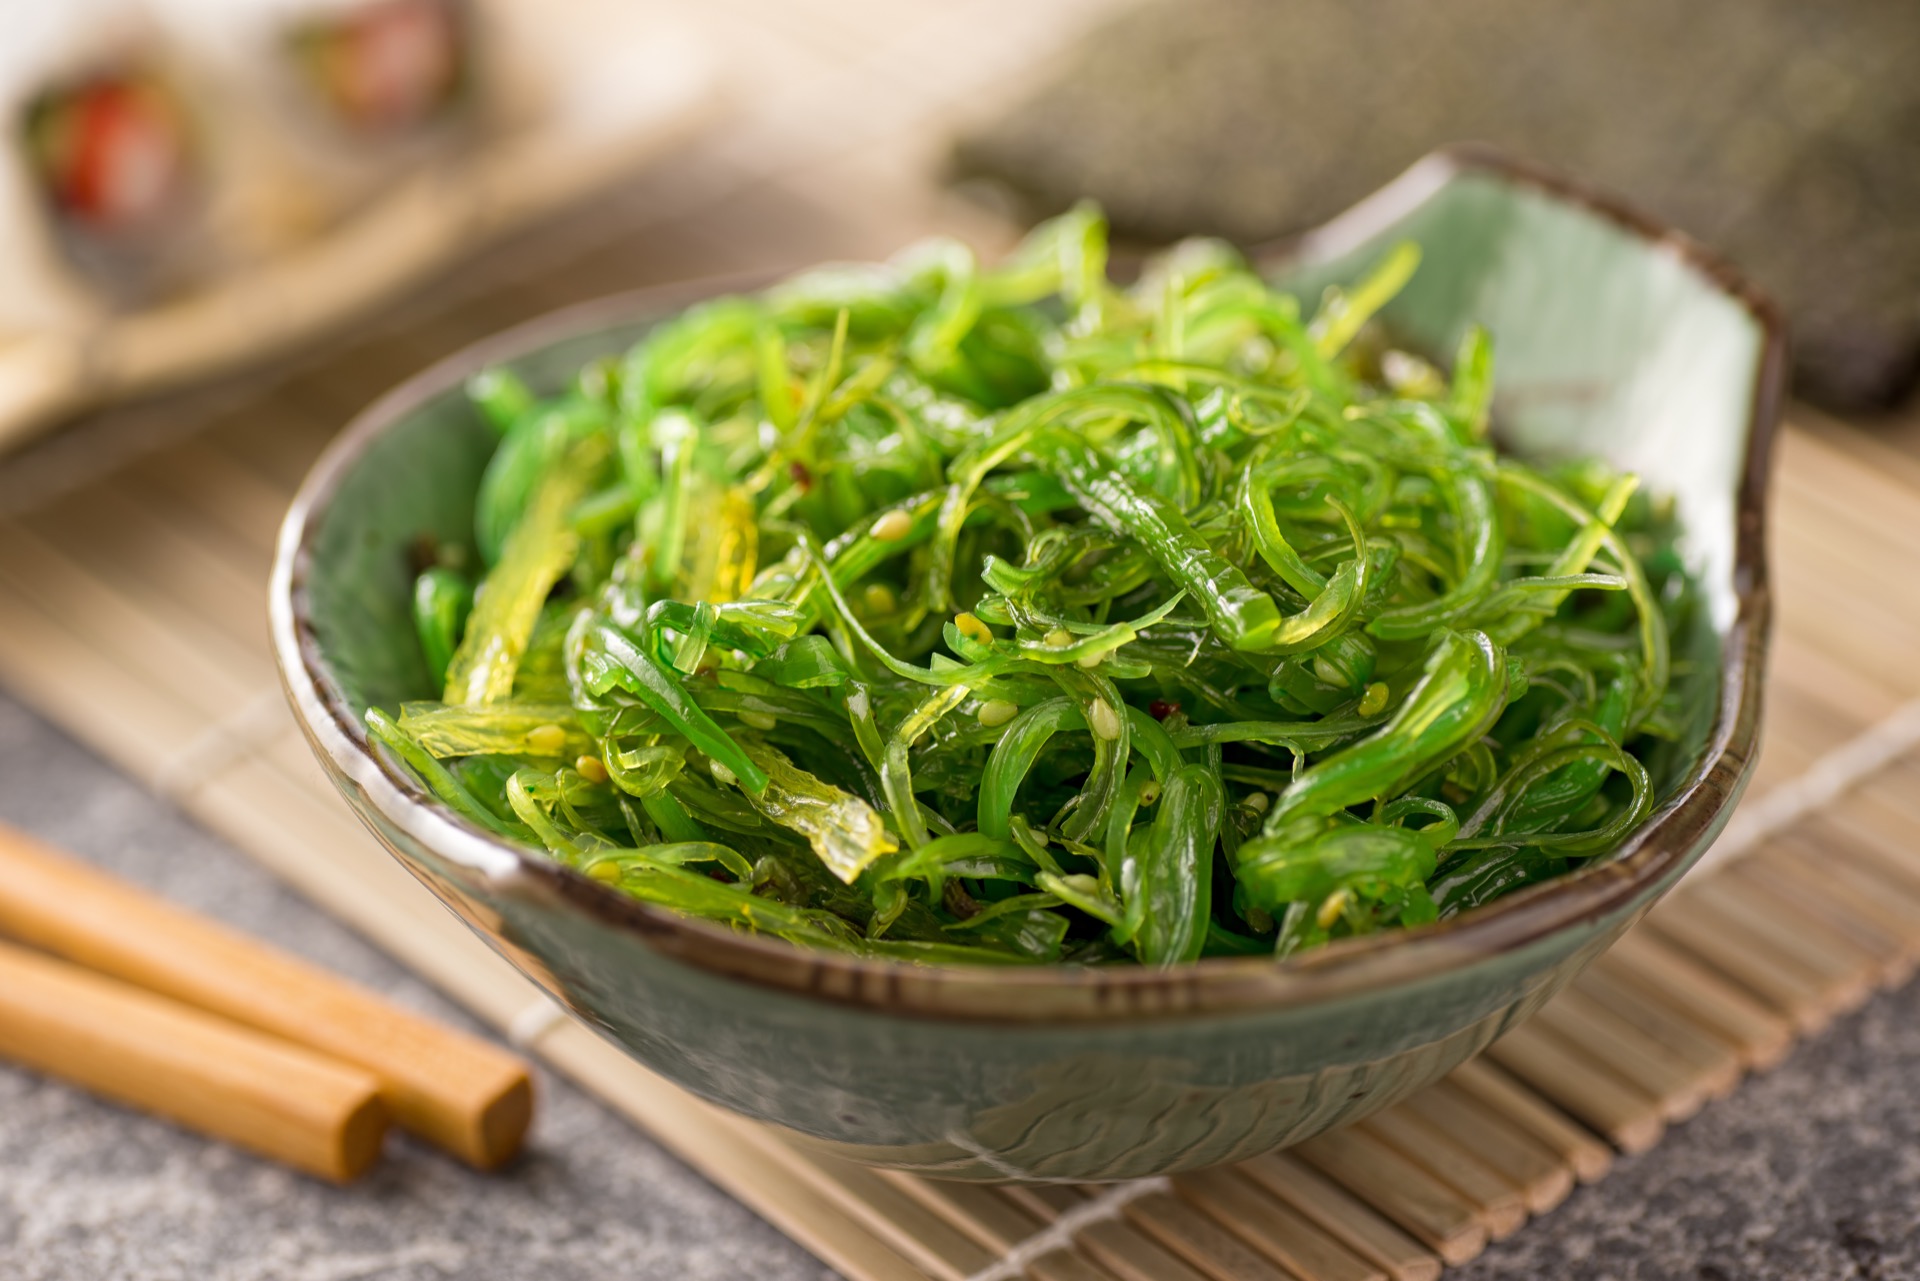 L'entreprise Algama explore des produits végétaux encore largement méconnus, notamment les algues pour en faire une alternative aux protéines animales. © fudio, Adobe Stock